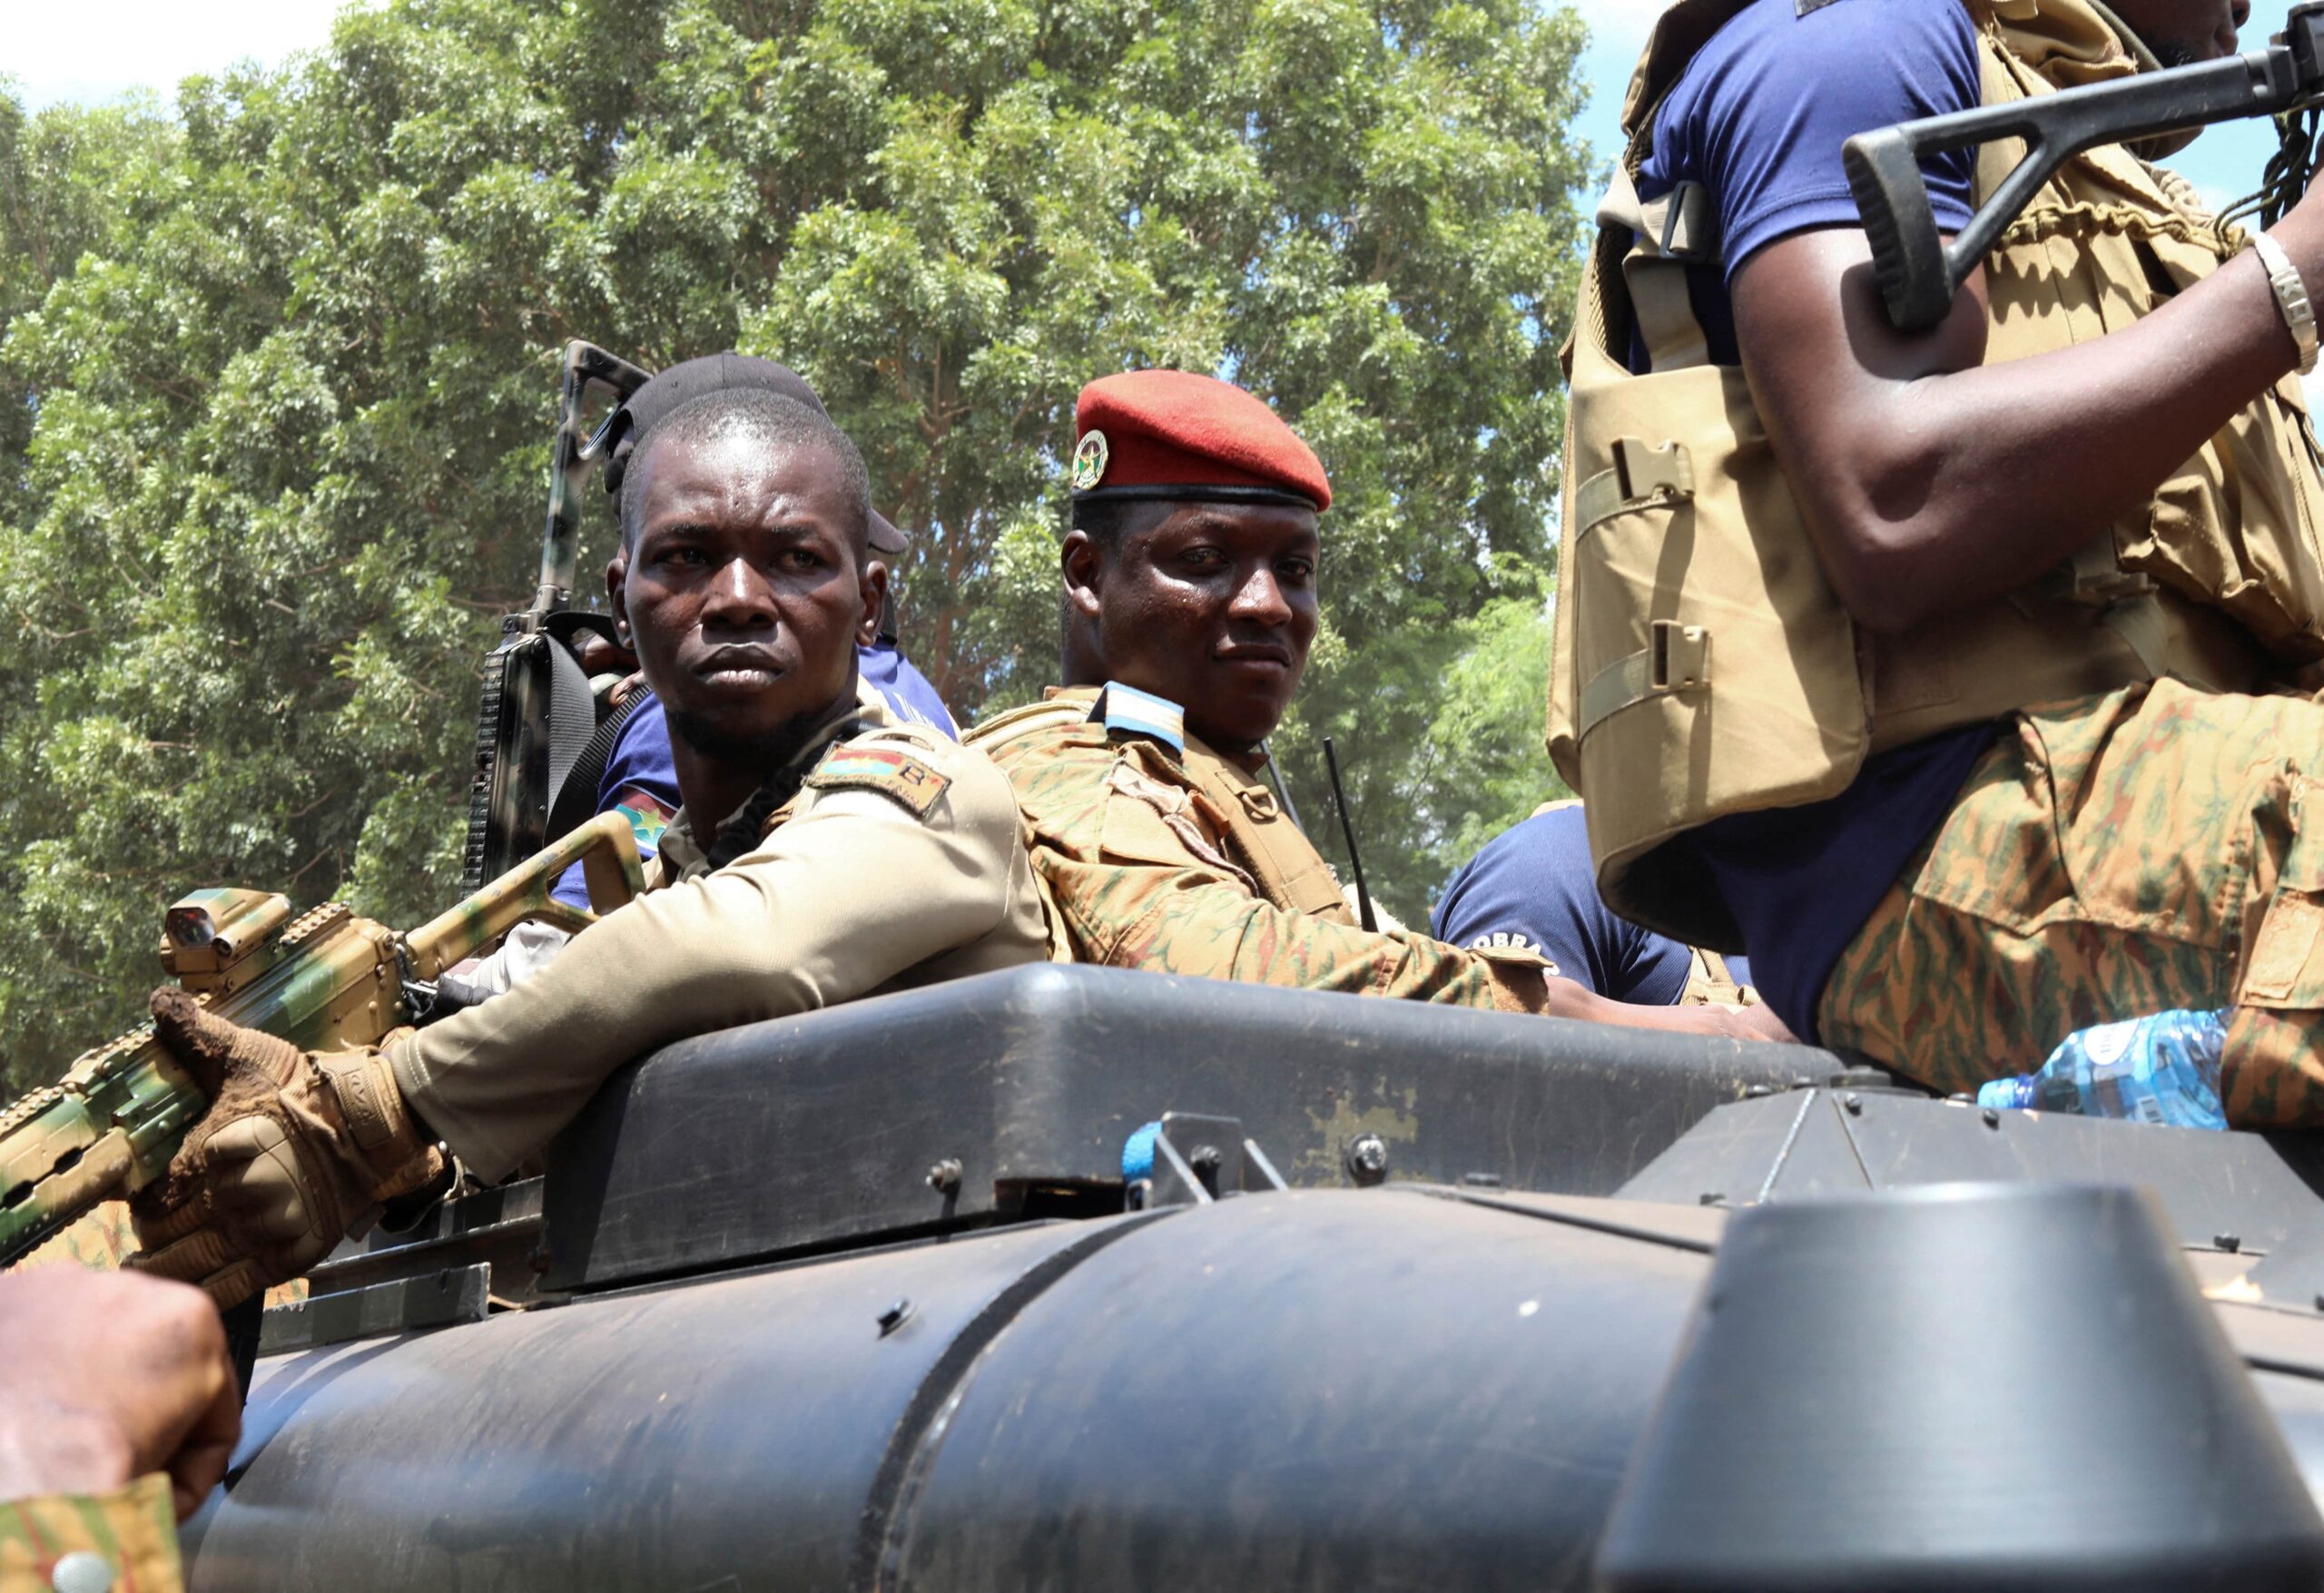 Burkina Faso: Le coup d’Etat militaire menace la stabilité et les droits humains